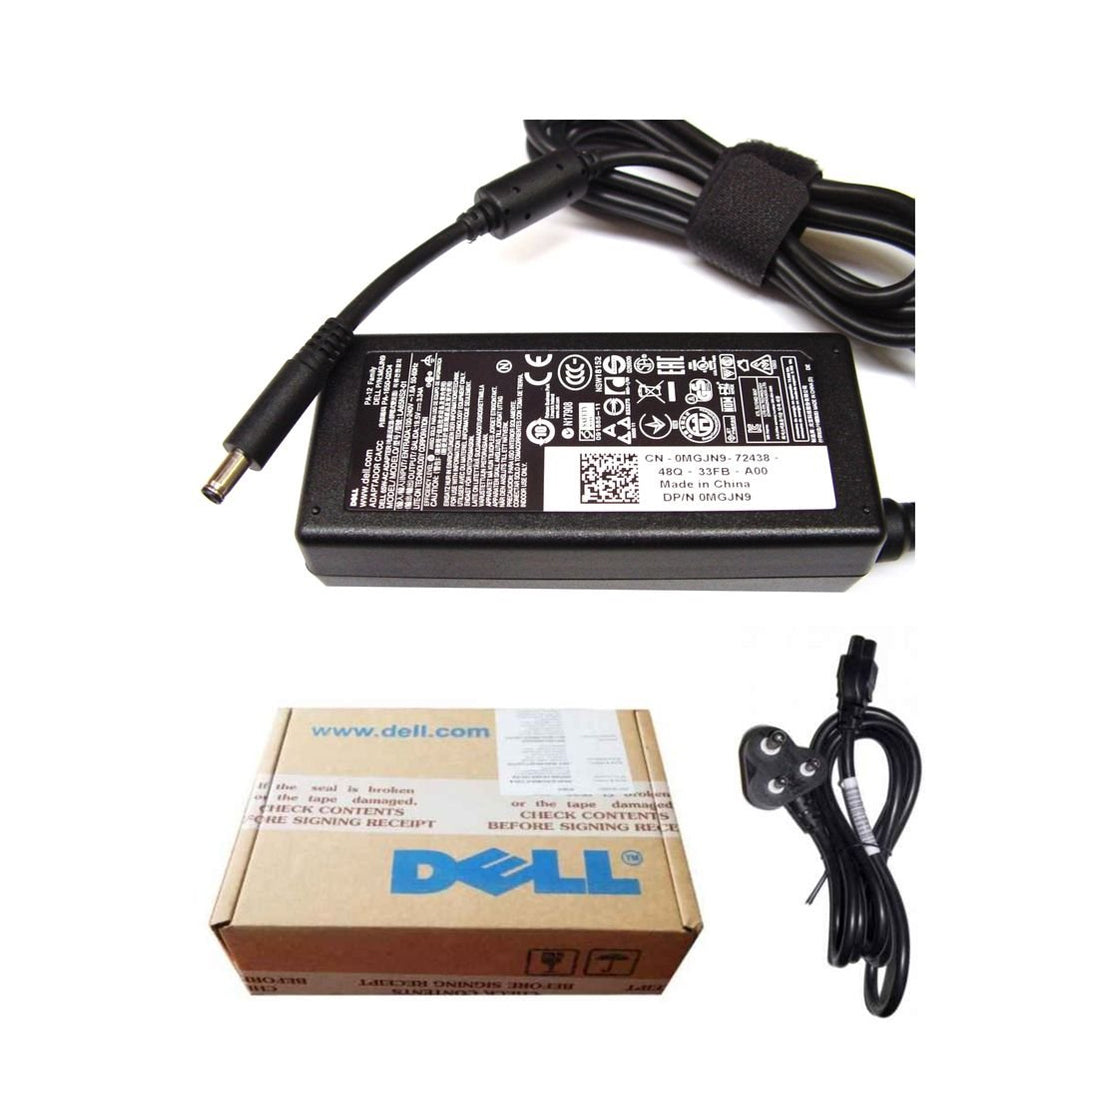 Dell ओरिजिनल 65W 19.5V 4.5mm पिन लैपटॉप चार्जर अडैप्टर Inspiron 17 5770 के लिए पावर कॉर्ड के साथ